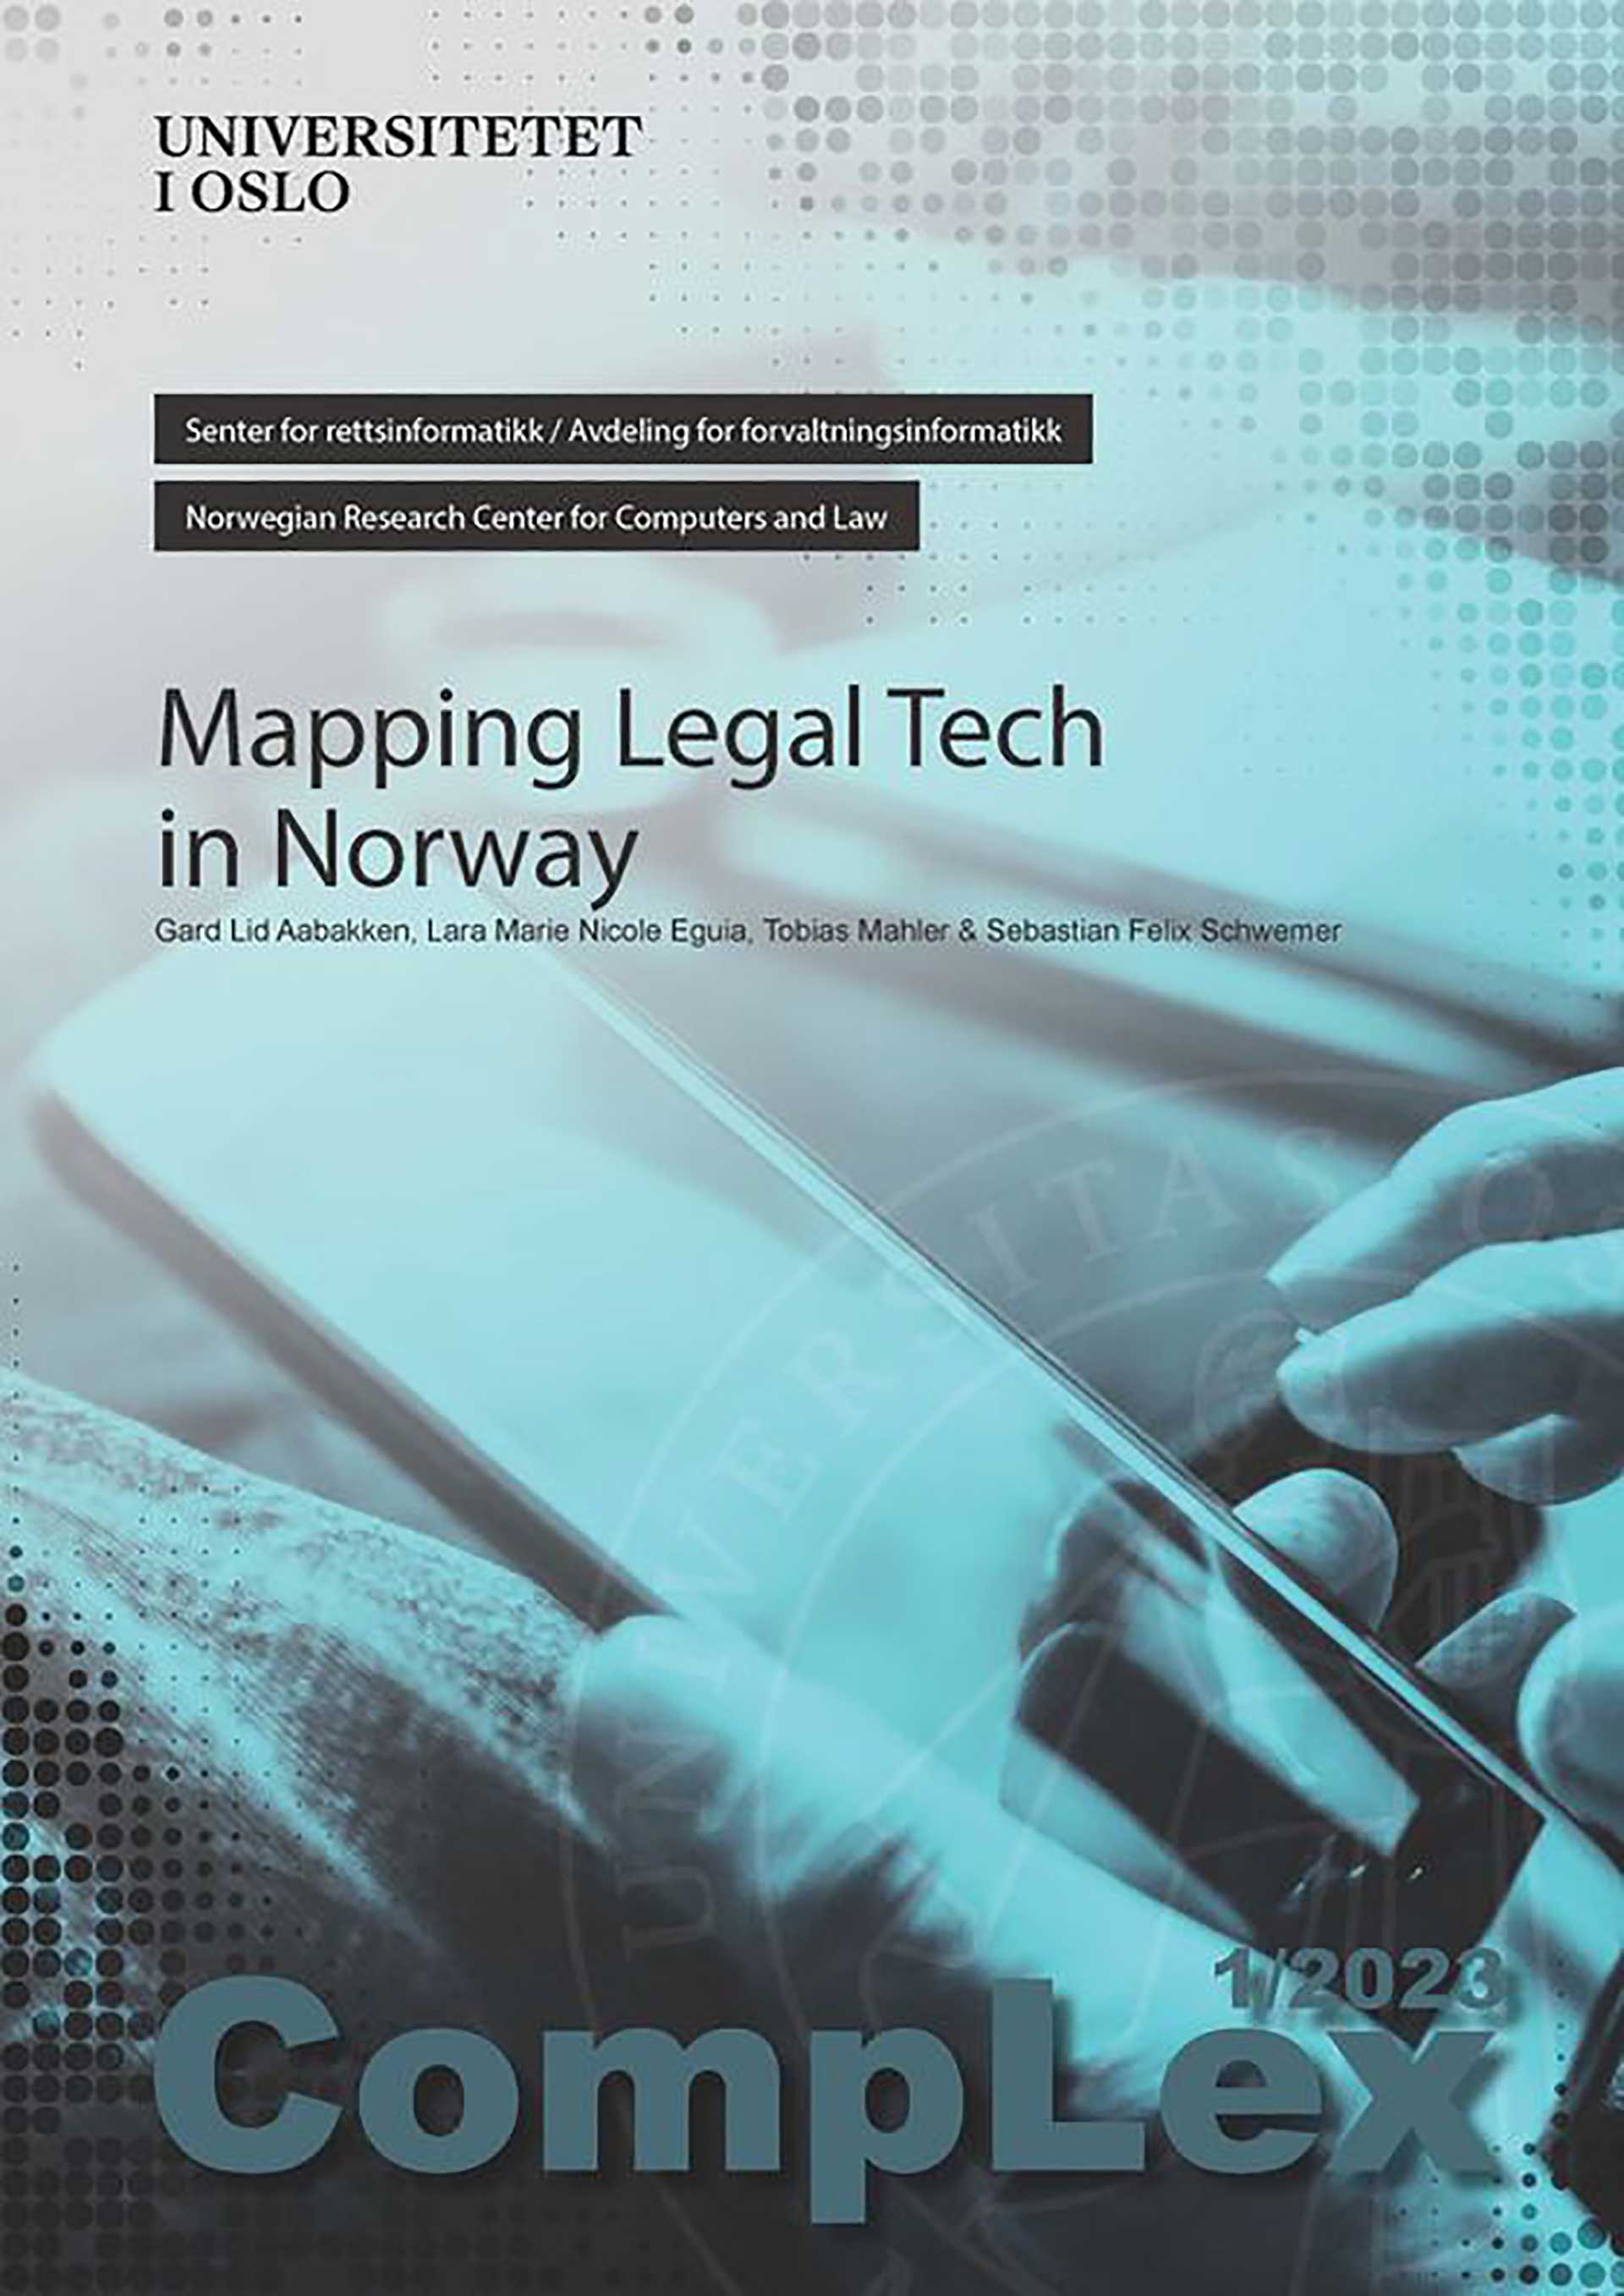 Et omslag med teksten «mapping legal tech in Norway” og vannmerket til Universitetet i Oslo, på turkis bakgrunn med en hånd som holder en mobil, foto.